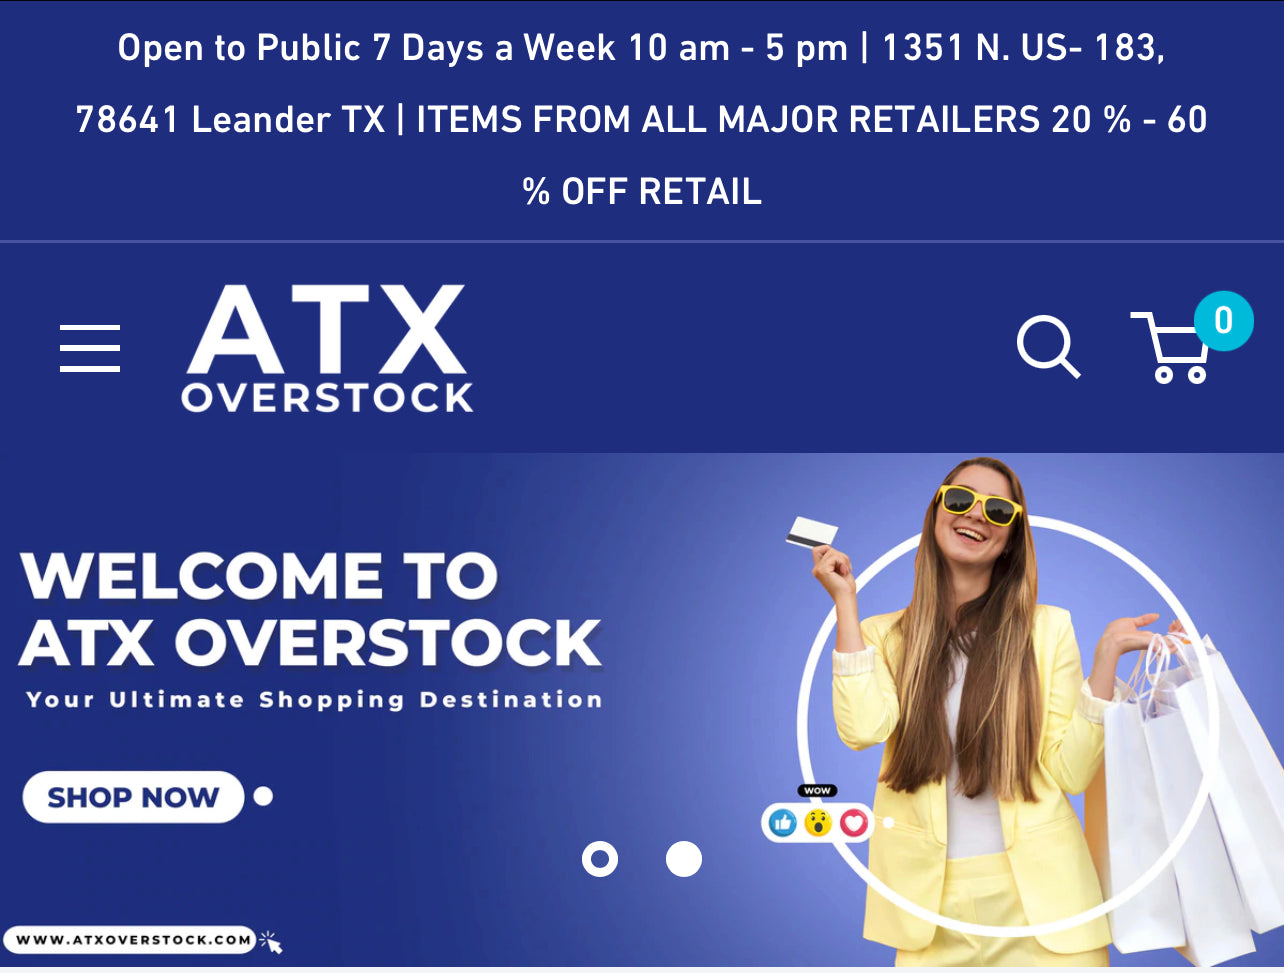 www.atxoverstock.com